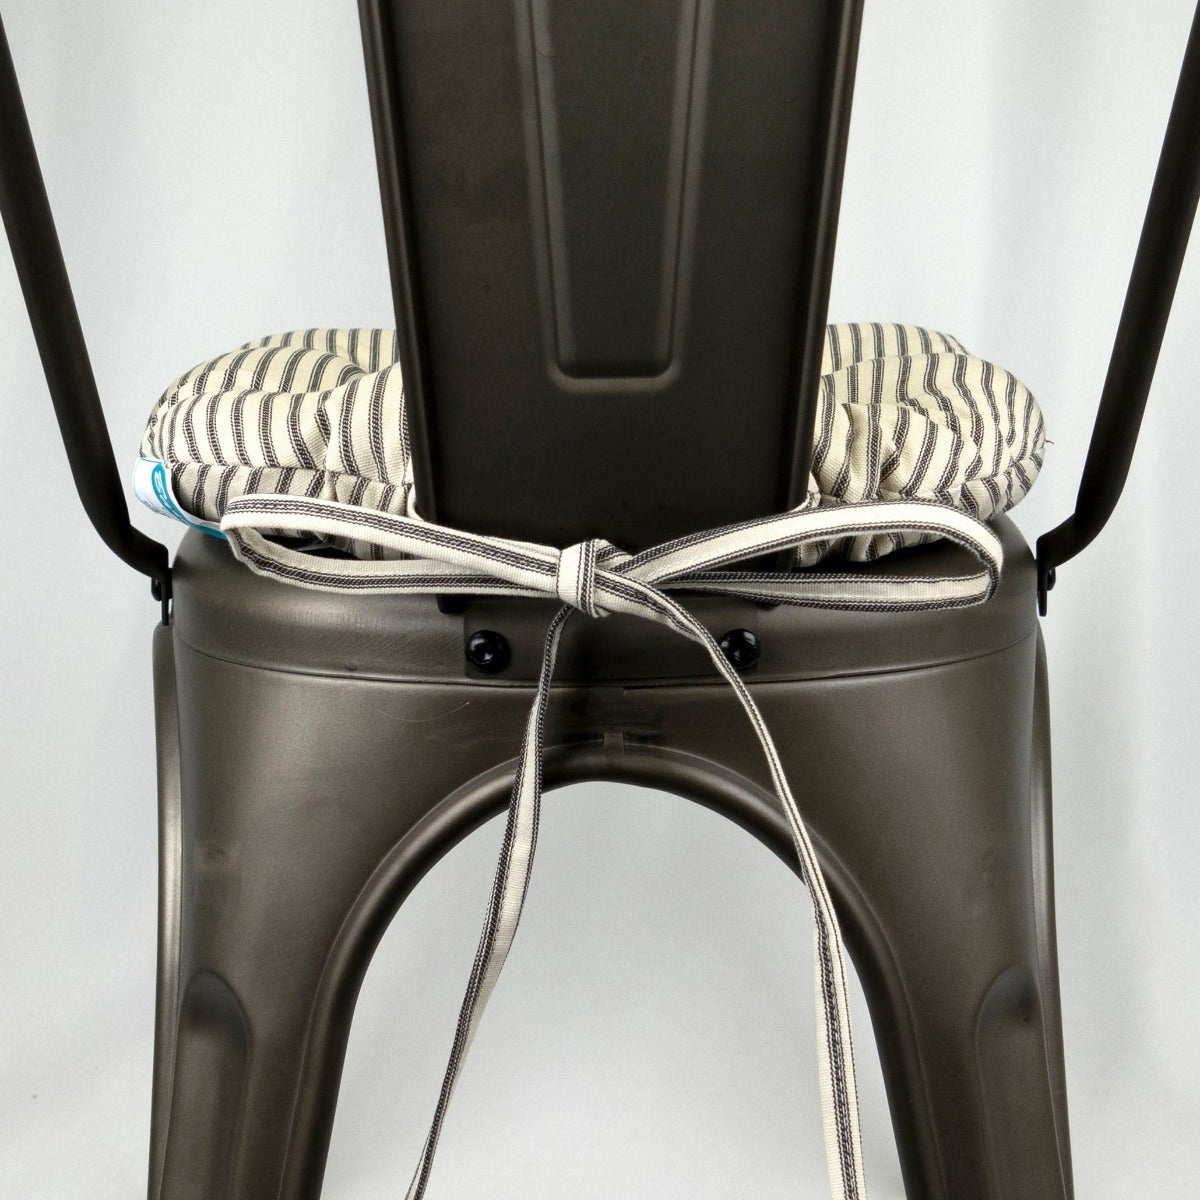 Ticking Stripe Natural Industrial Chair Cushion - Latex Foam Fill